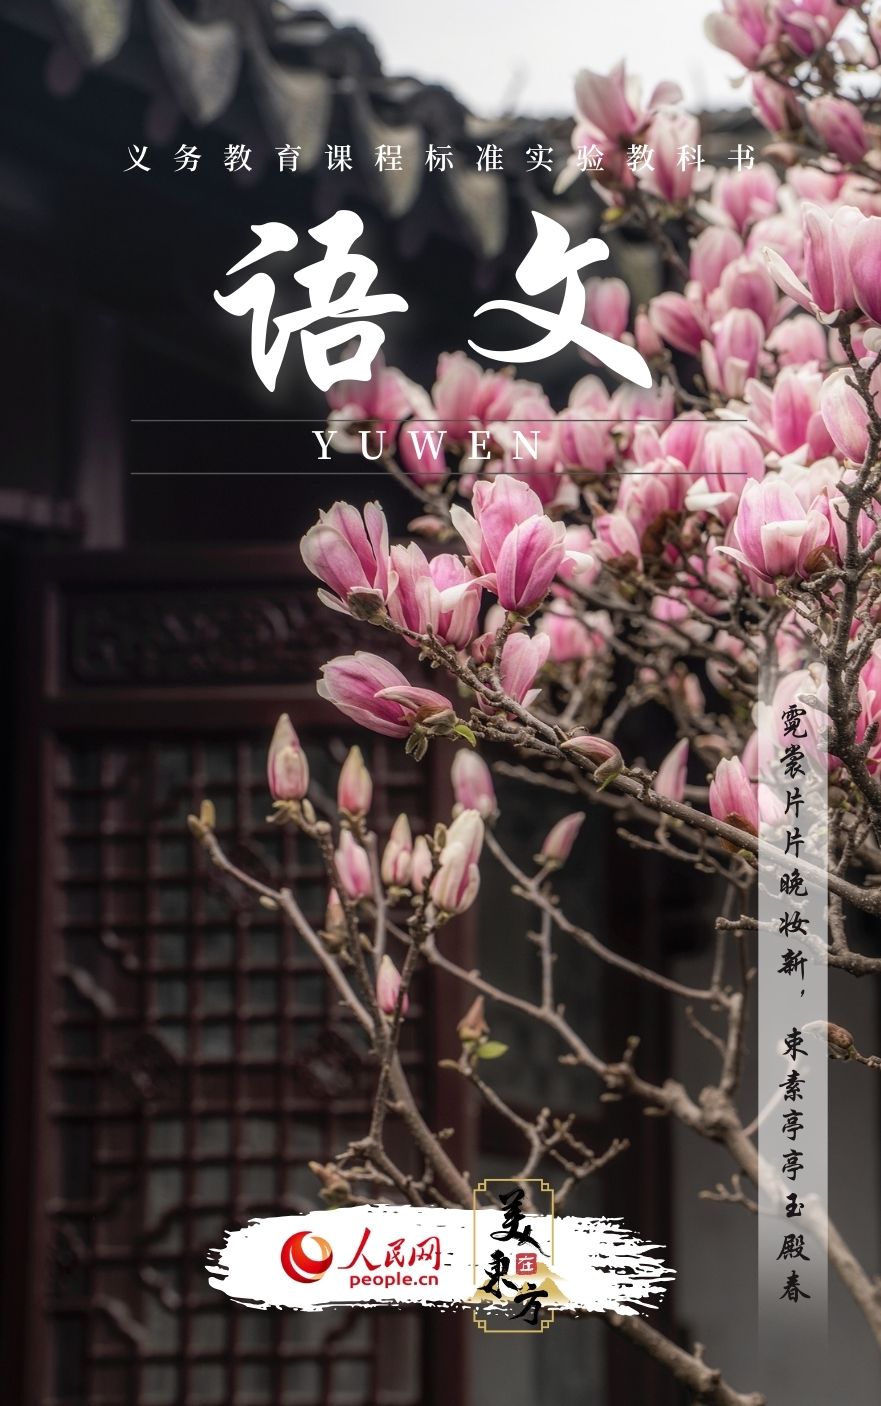 江苏苏州网师园玉兰一树繁花迎春来。今年以来“赏花+文化”等特色春季旅行受热捧，“国潮”制造和品牌体系正加快成长，